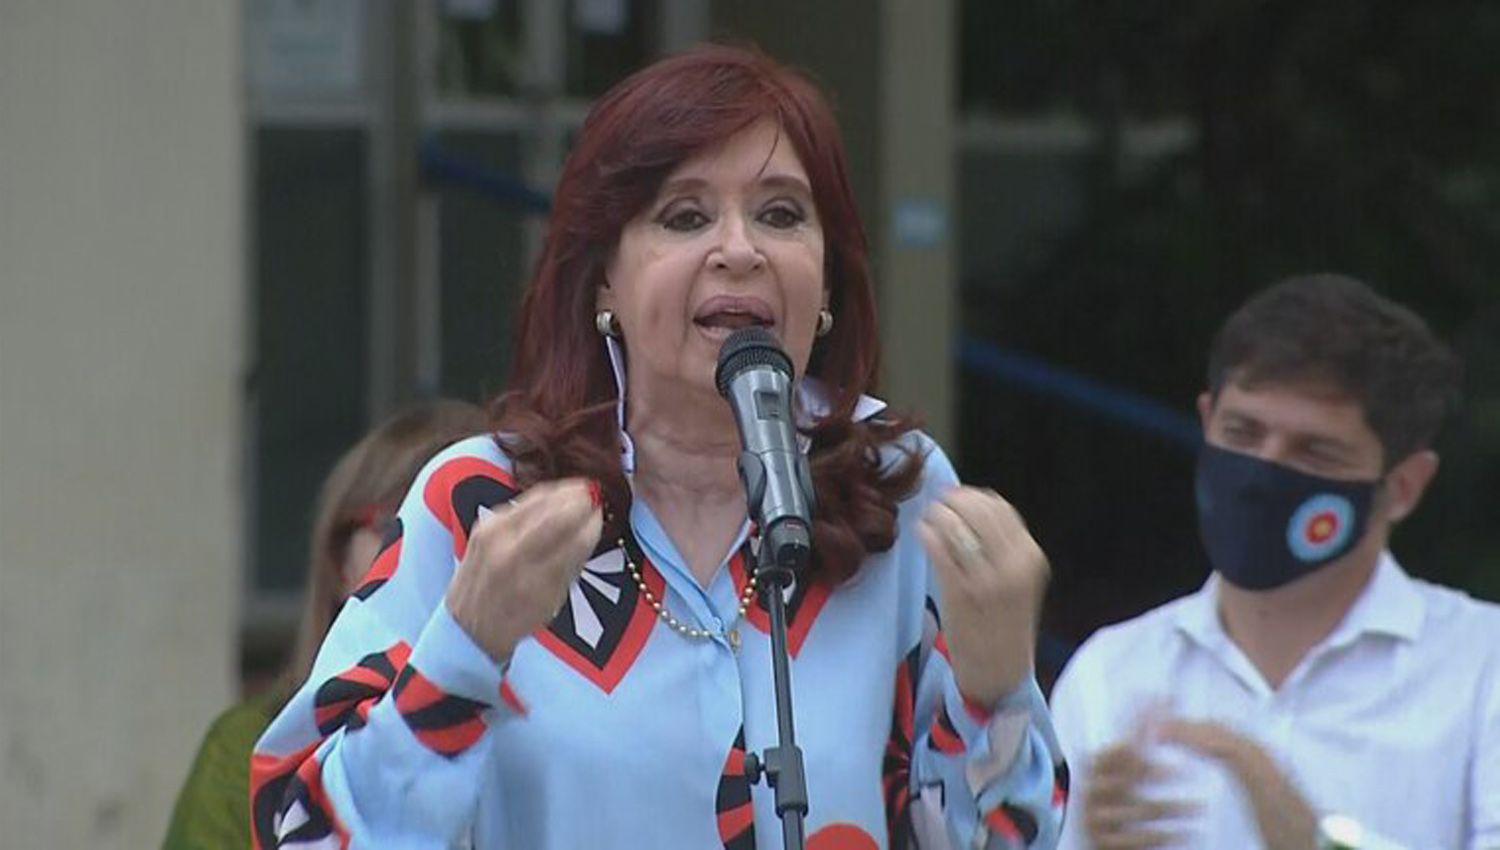 Cristina Kirchner criticoacute a Macri y pidioacute un acuerdo entre los partidos poliacuteticos